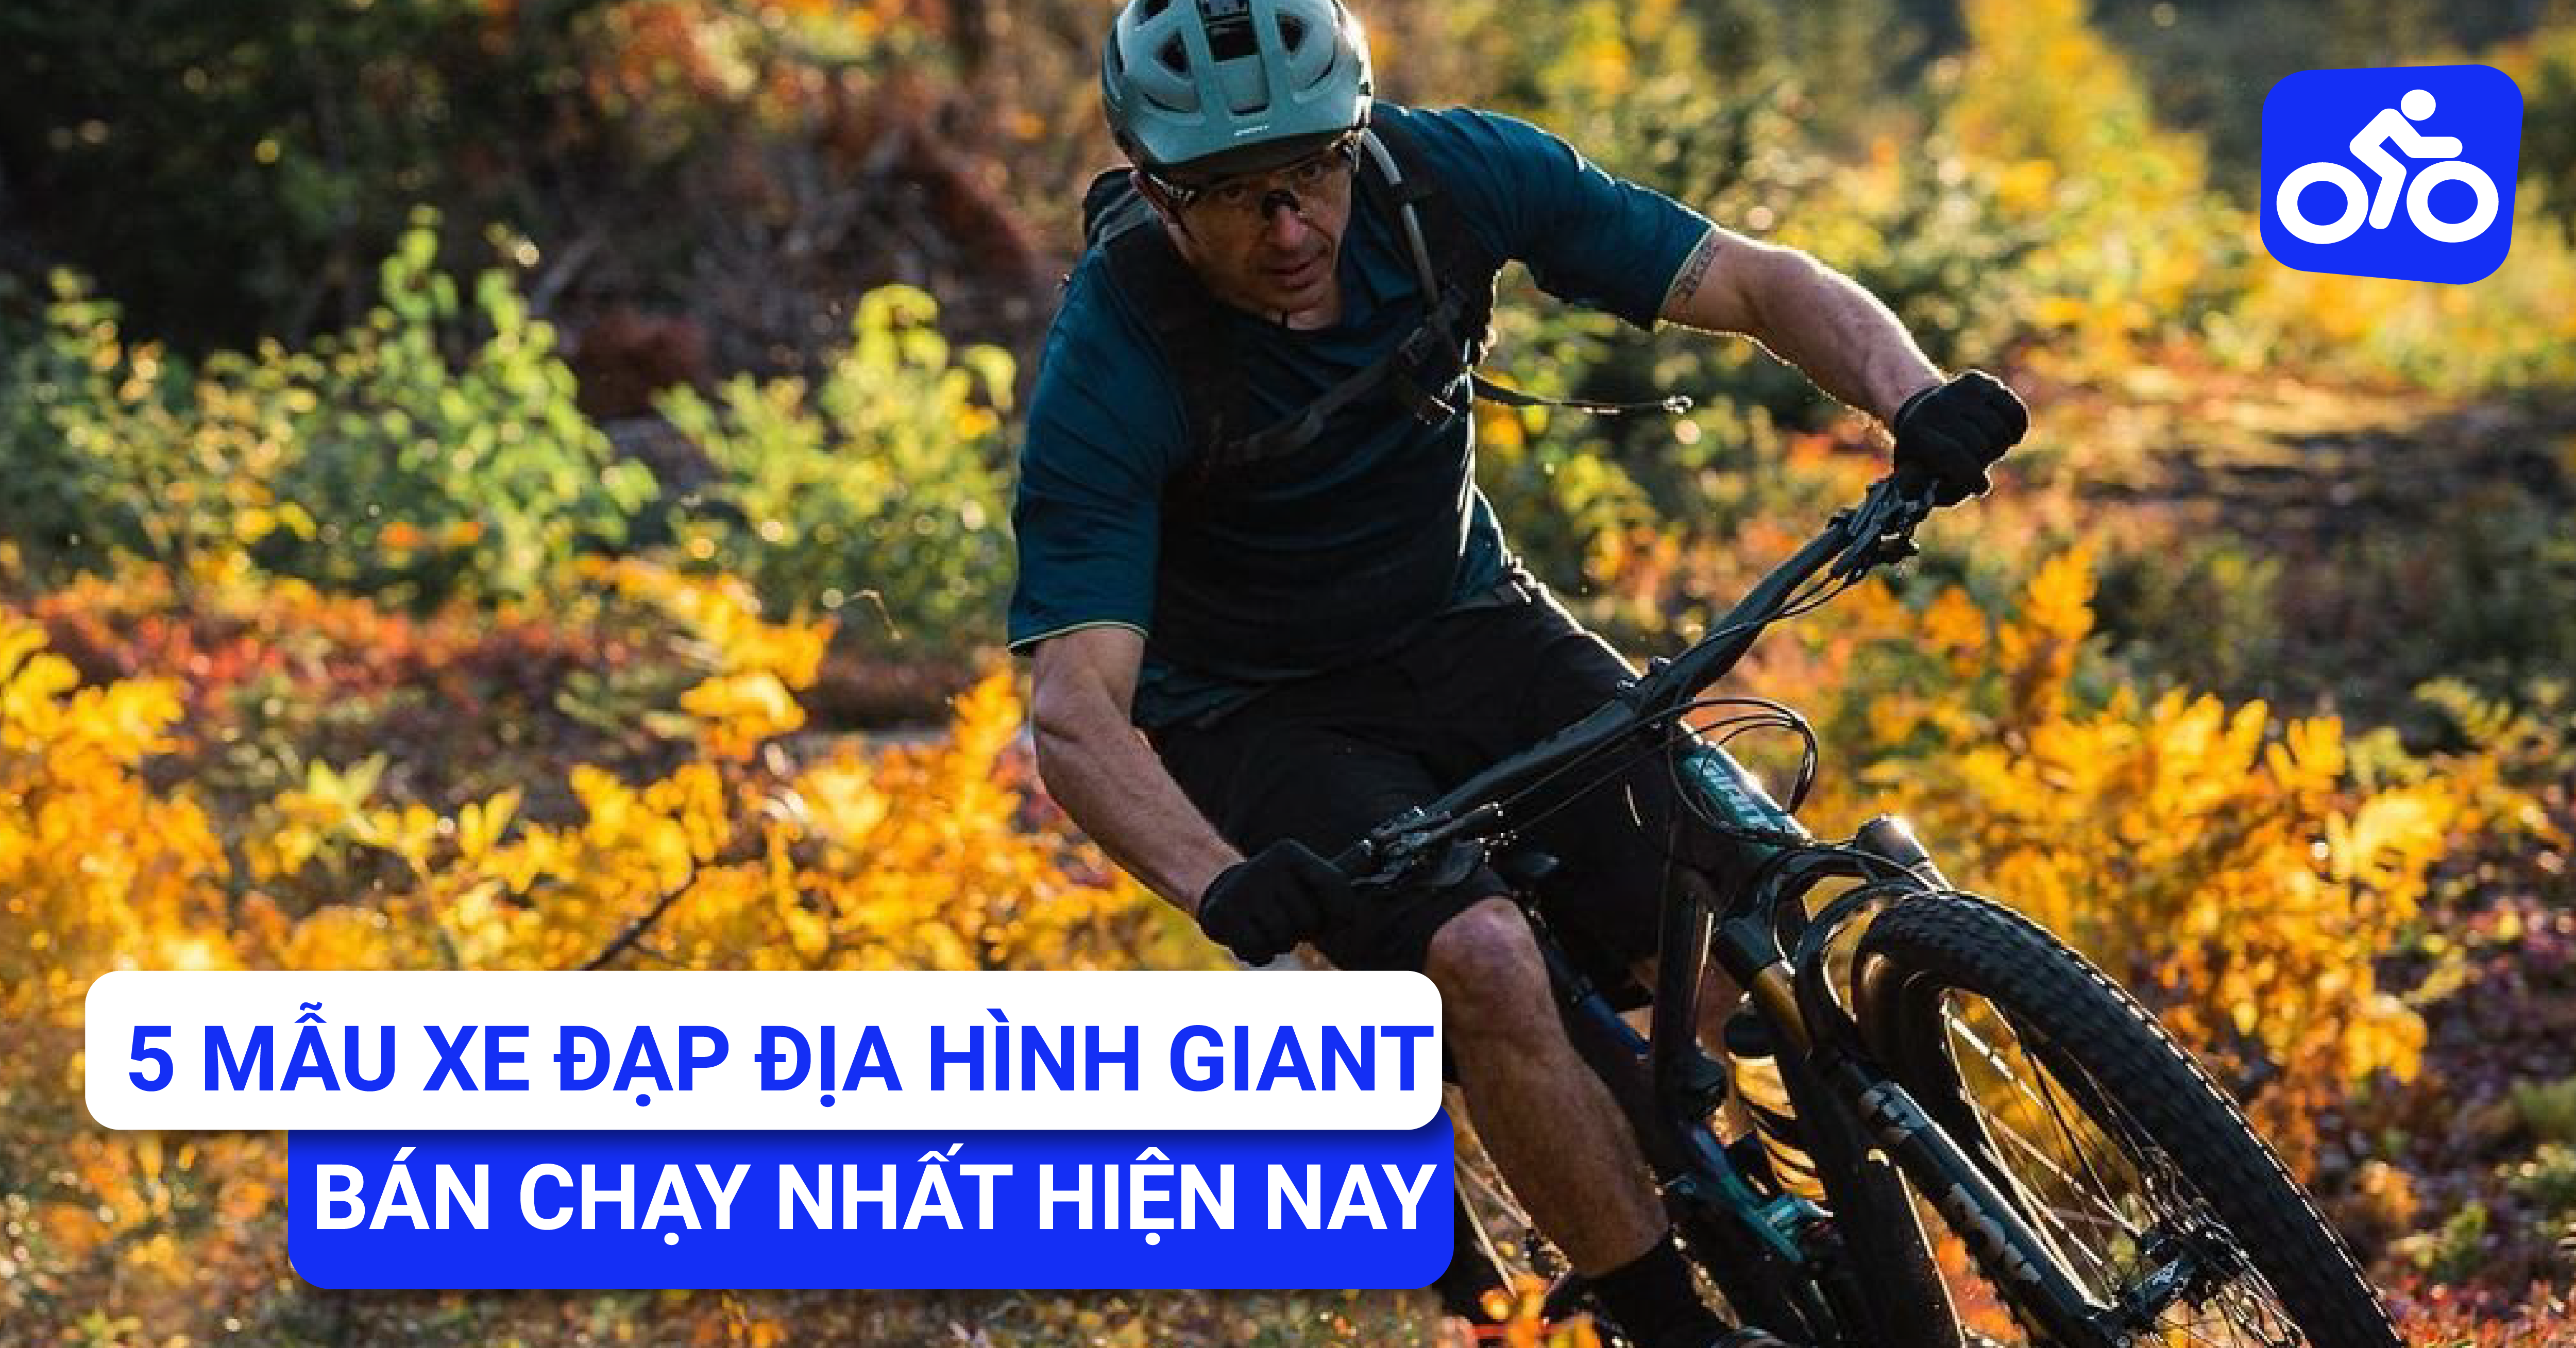 Thỏa sức khám phá địa hình và trải nghiệm cảm giác mạnh mẽ cùng chiếc xe đạp địa hình thương hiệu Giant từ XEDAP.VN.